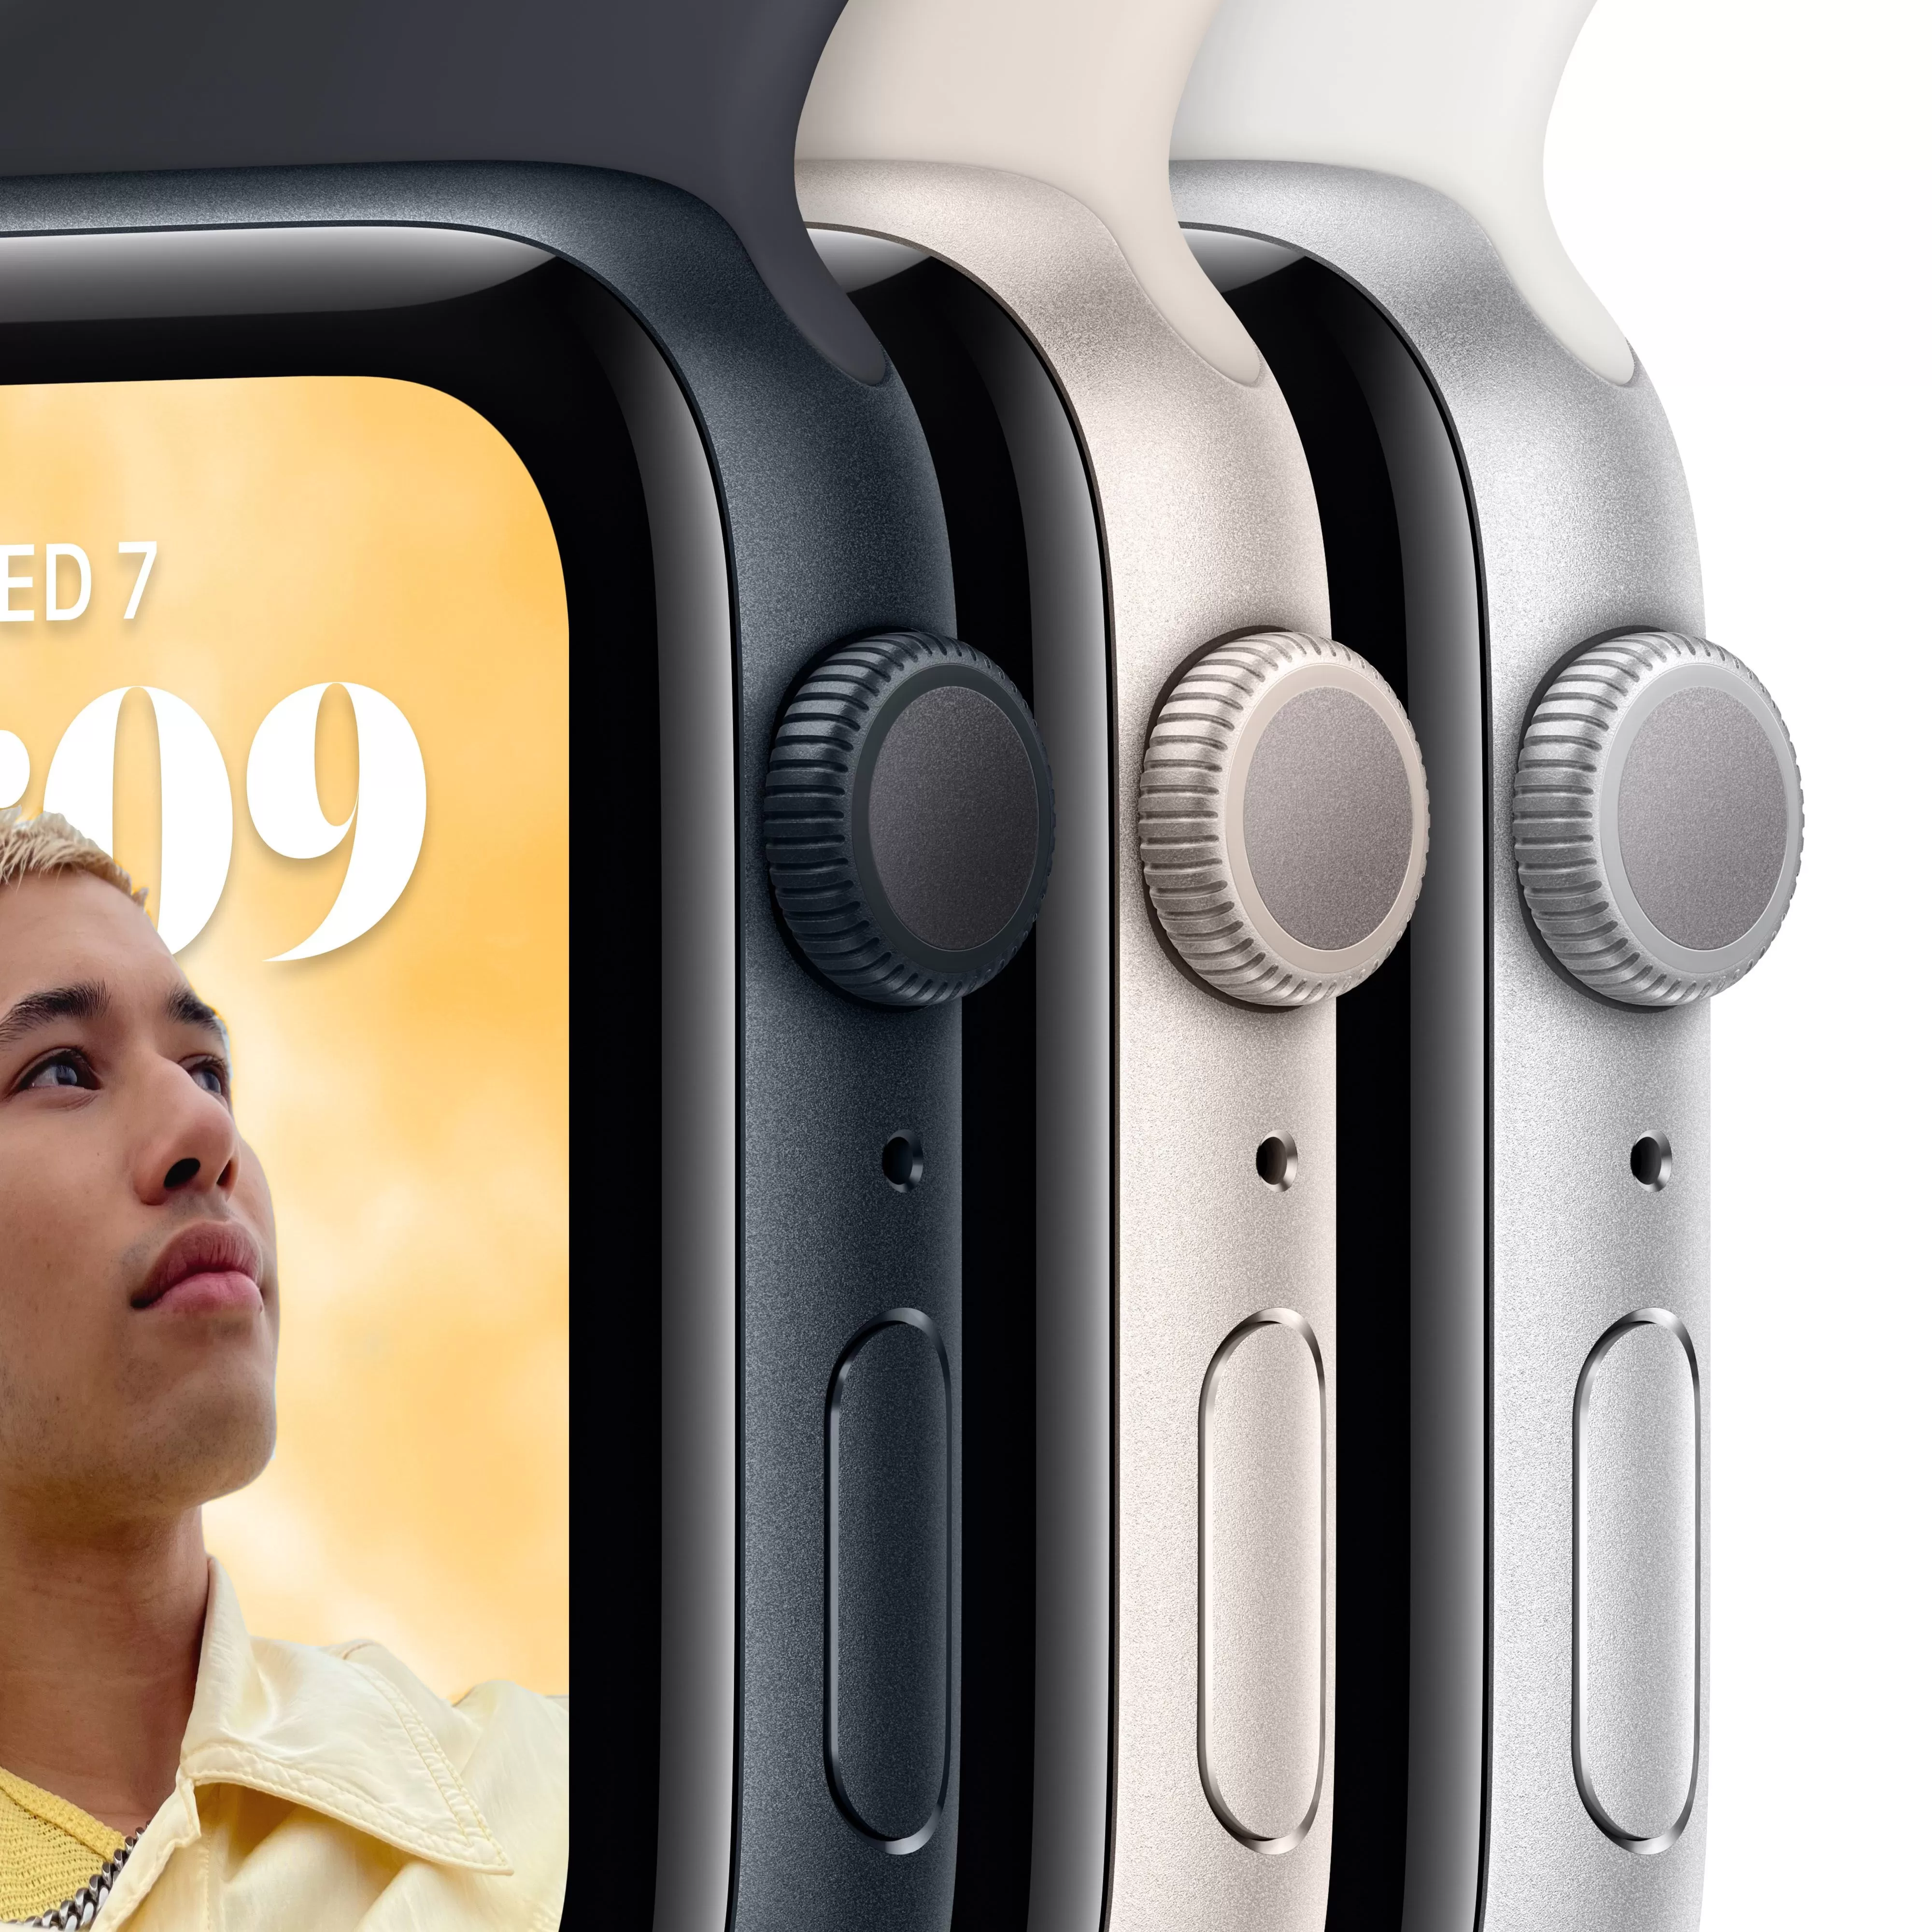 Apple Watch SE 2022, 40 мм, корпус из алюминия цвета «сияющая звезда», спортивный ремешок цвета «сияющая звезда»